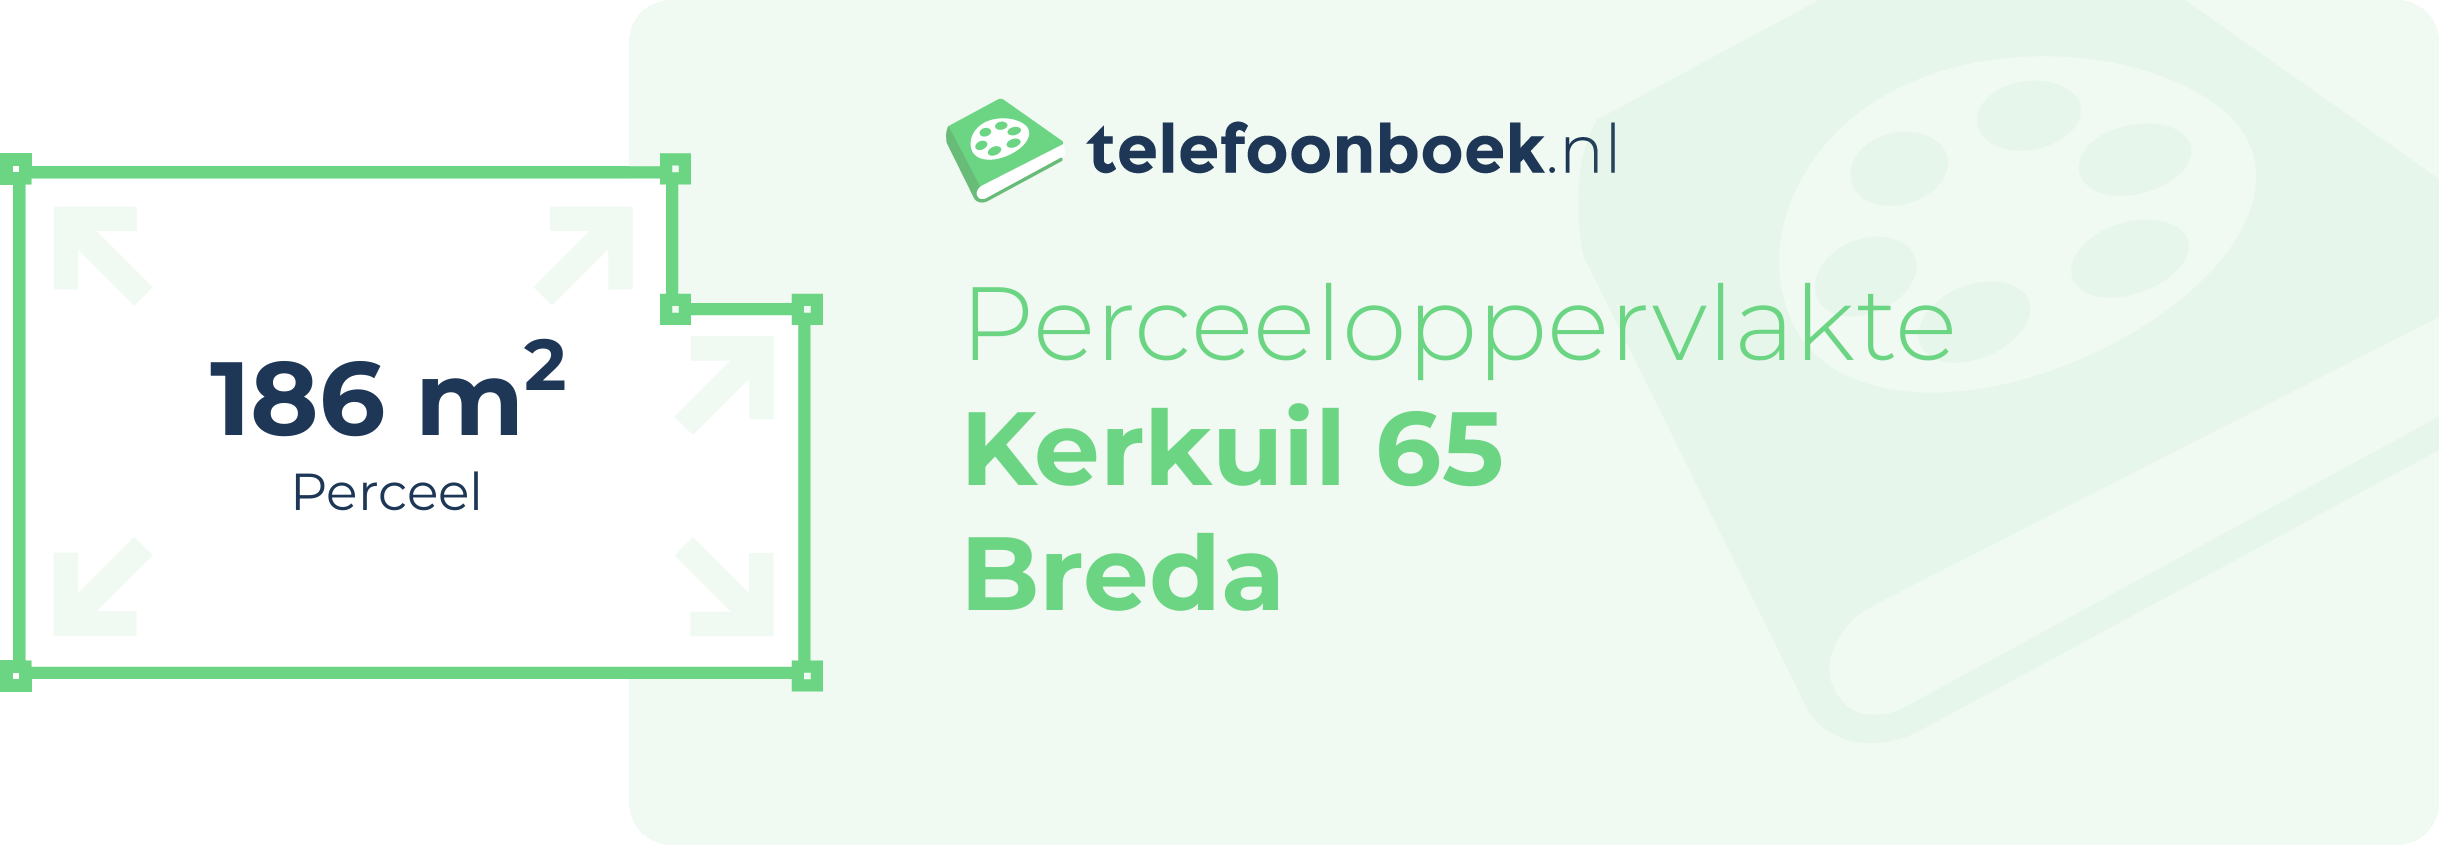 Perceeloppervlakte Kerkuil 65 Breda